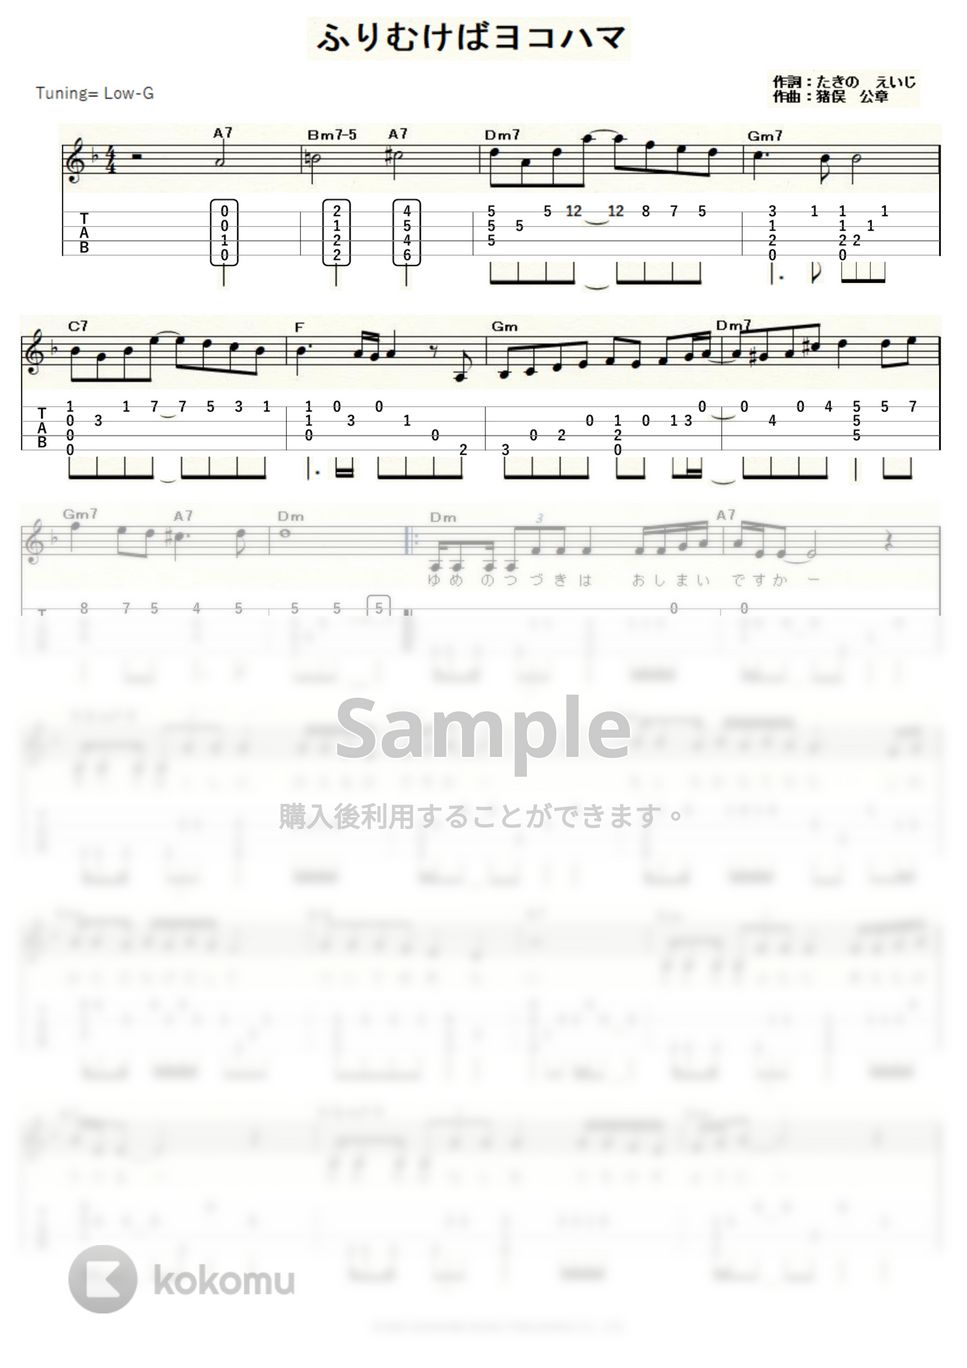 マルシア - ふりむけばヨコハマ (ｳｸﾚﾚｿﾛ / Low-G / 中級) by ukulelepapa